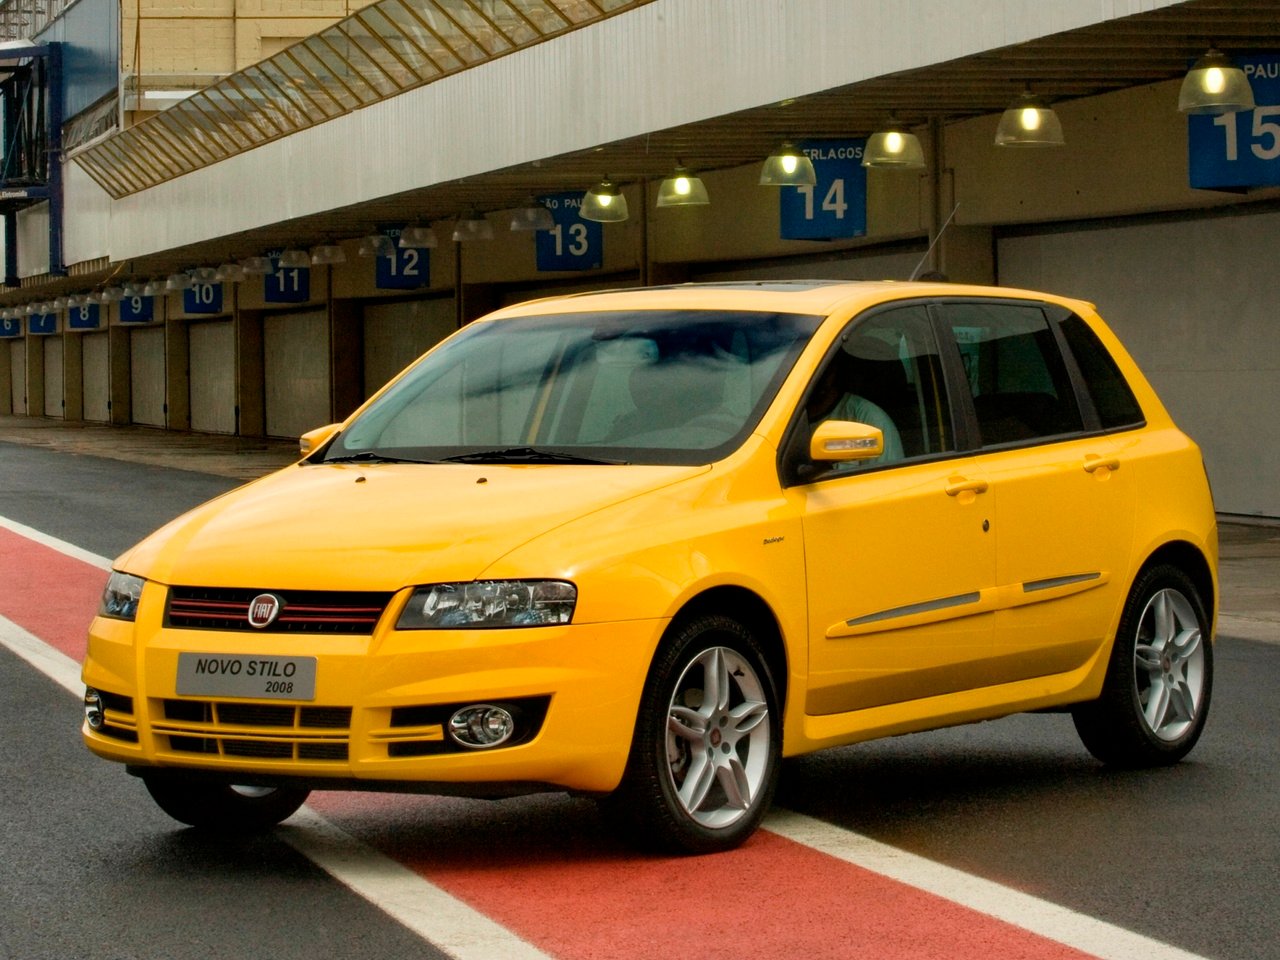 Fiat Stilo: 10 fatos sobre essa opção de carro usado